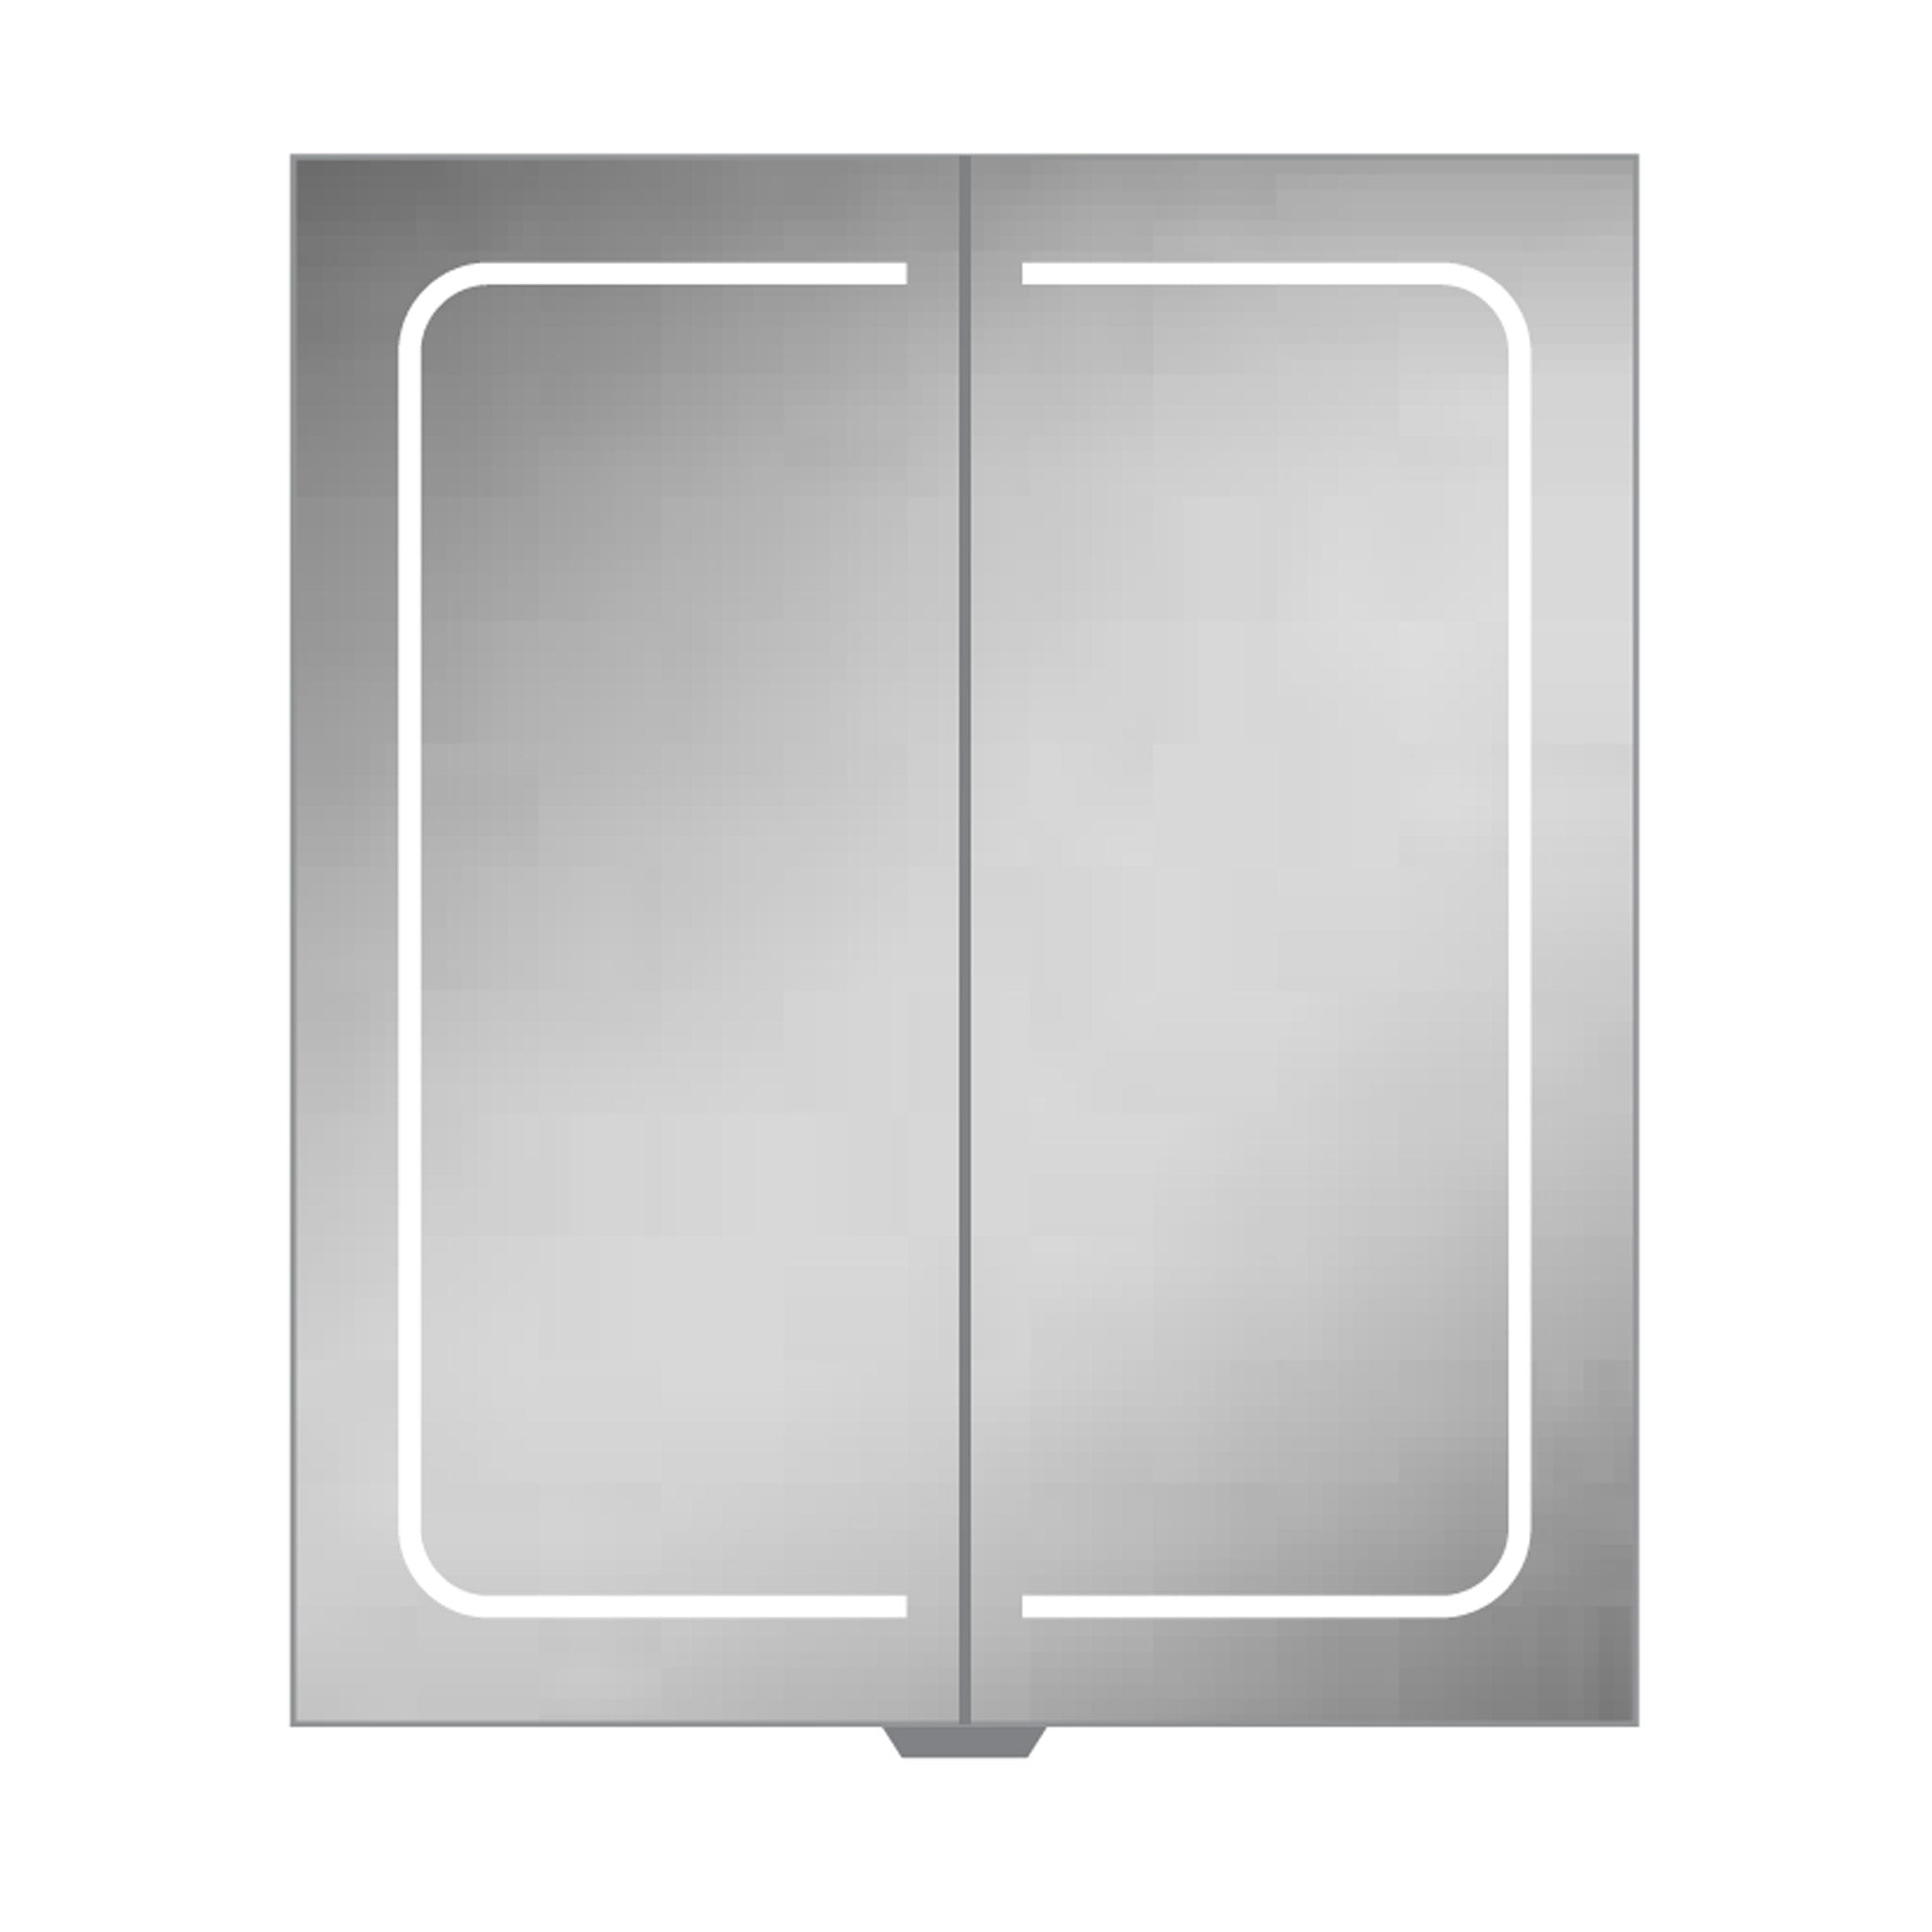 HiB Vapor 60 LED Demisting Aluminium Mirror Cabinet 60 x 70cm